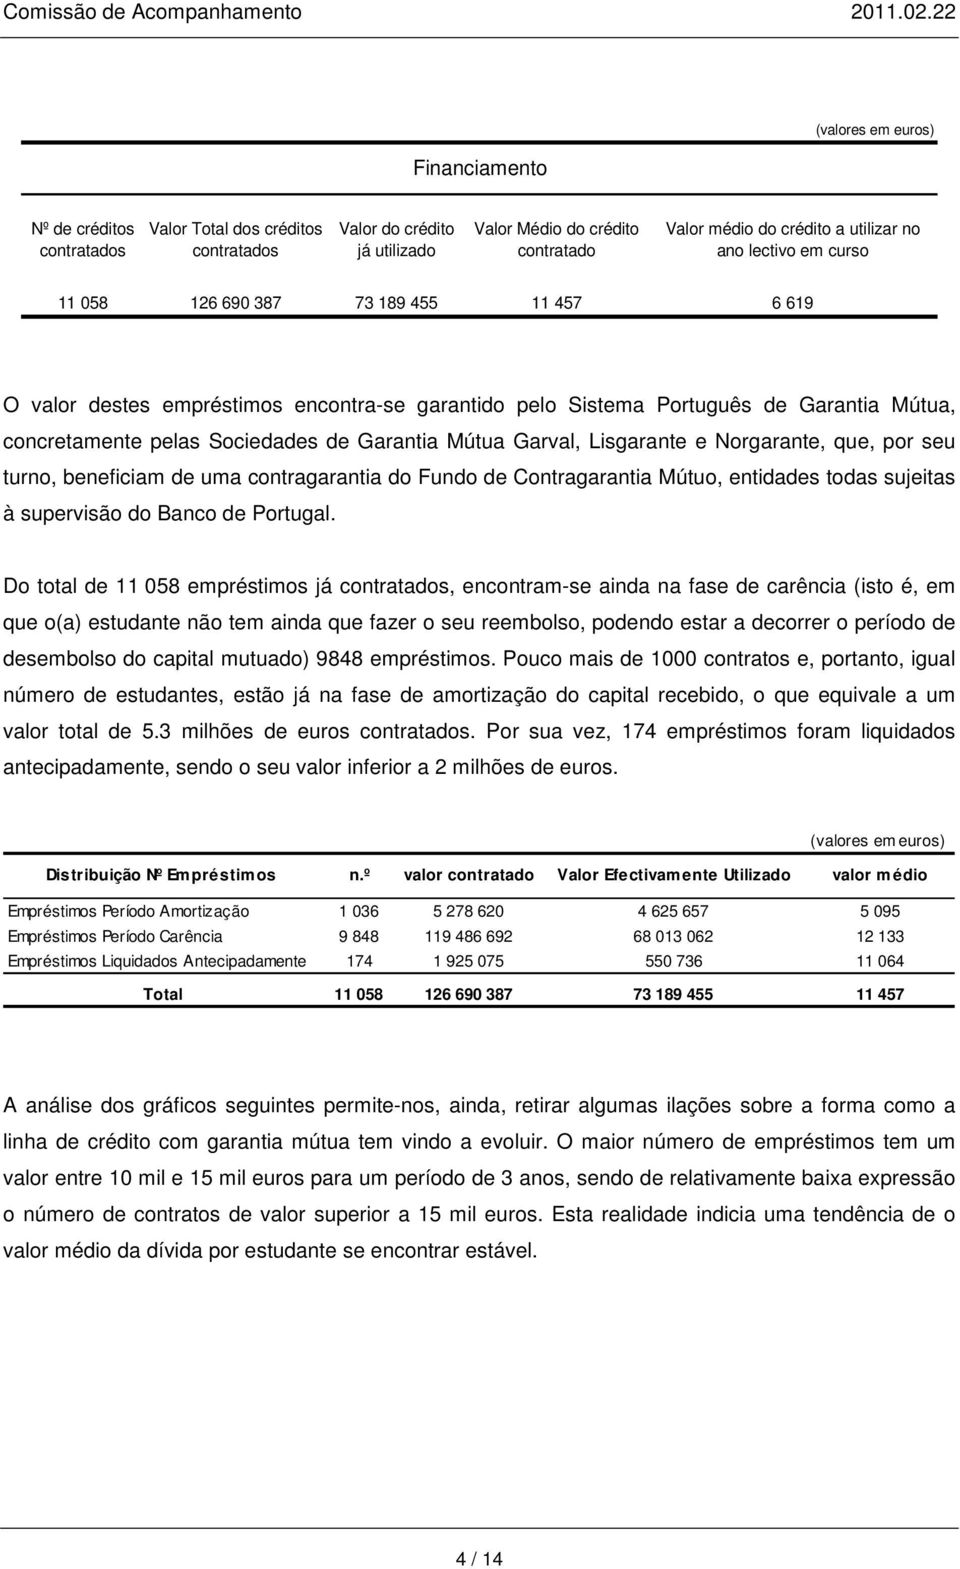 Lisgarante e Norgarante, que, por seu turno, beneficiam de uma contragarantia do Fundo de Contragarantia Mútuo, entidades todas sujeitas à supervisão do Banco de Portugal.